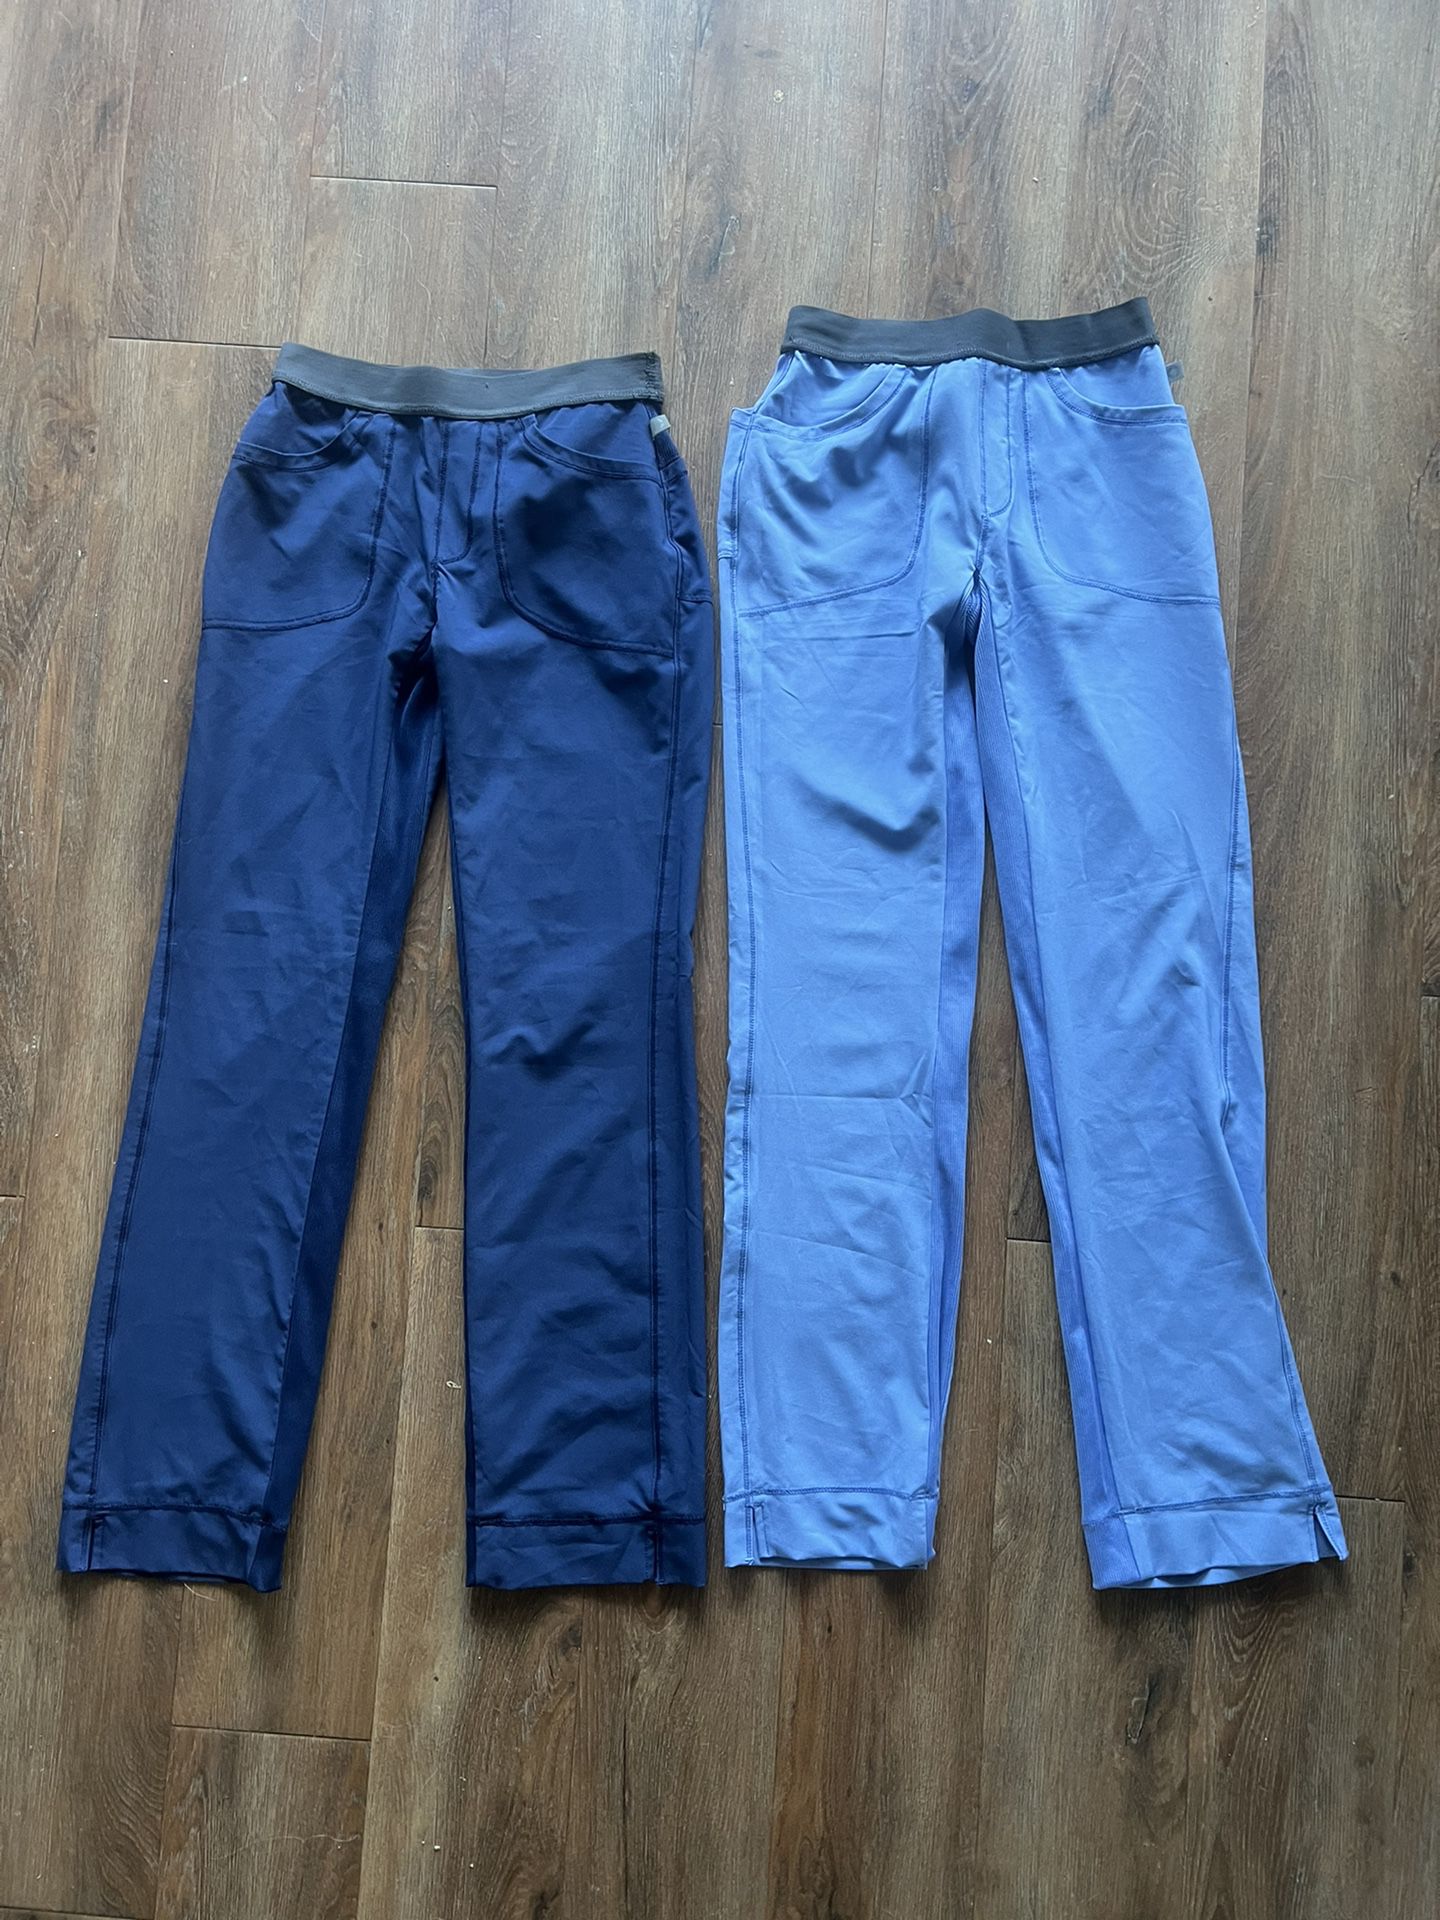 Cherokee Scrub Pants (size Xxs/XS)